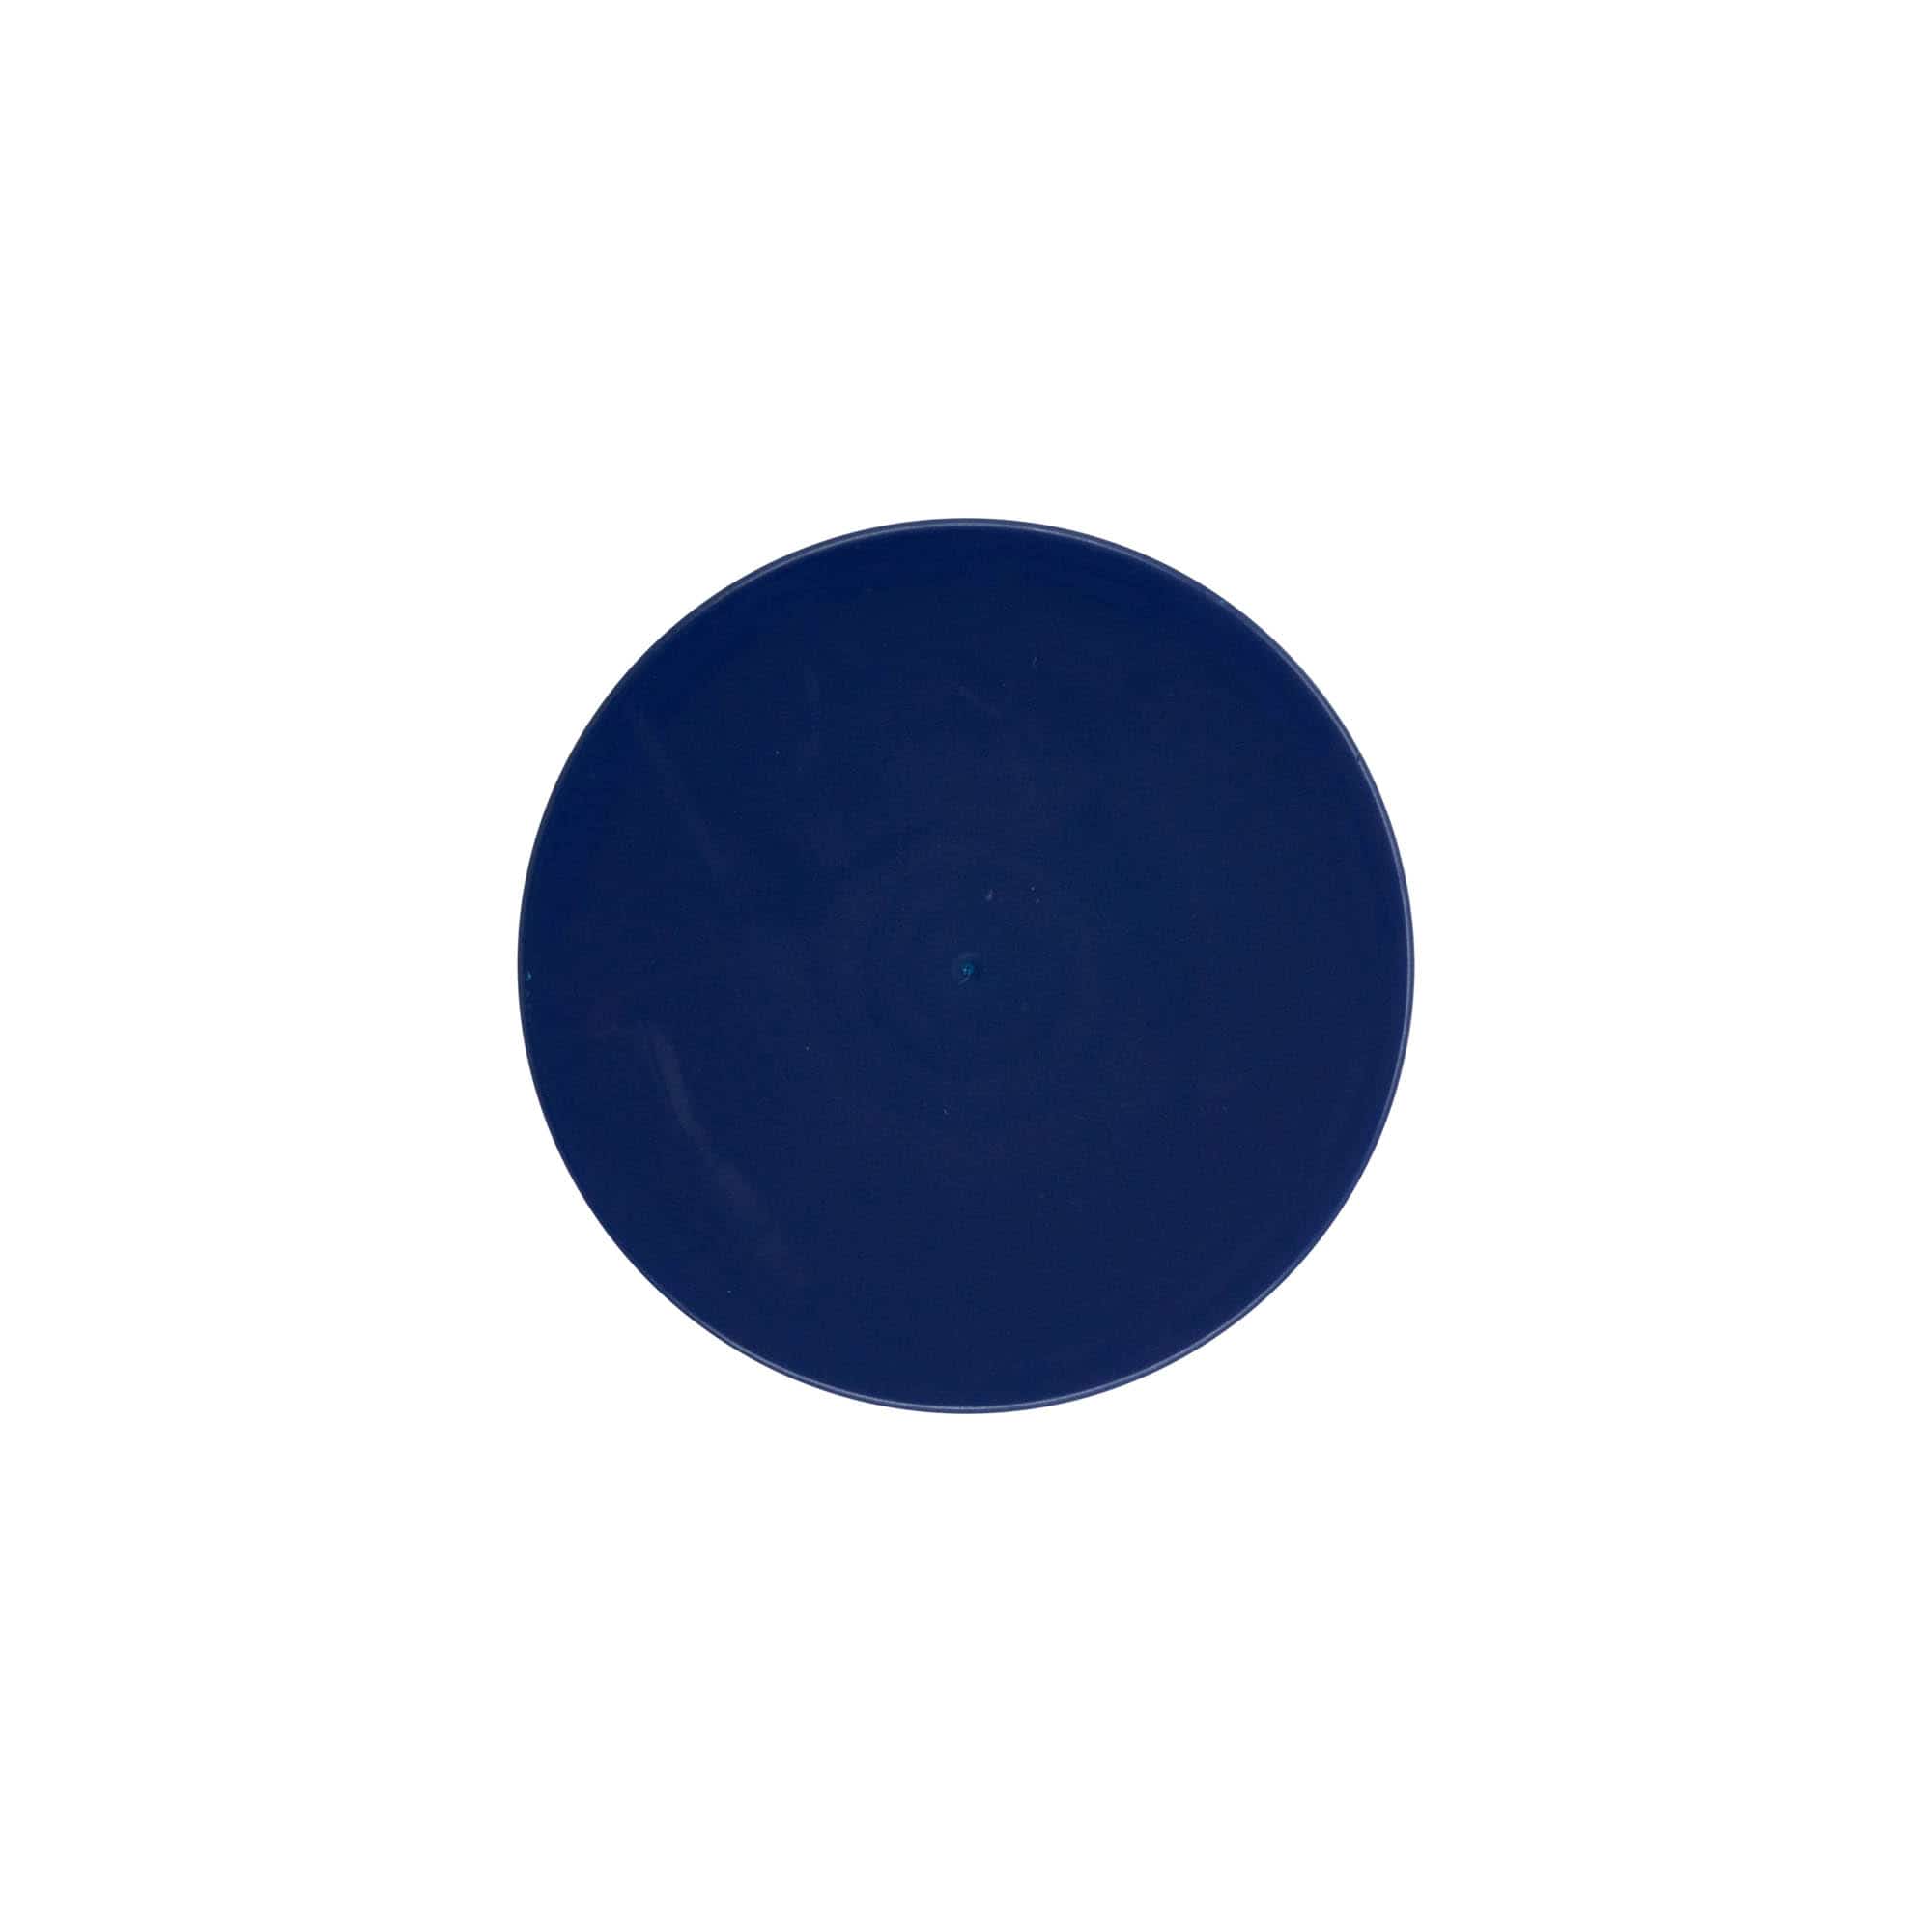 Stülpdeckel für Standard-Keramiktopf, HDPE-Kunststoff, blau